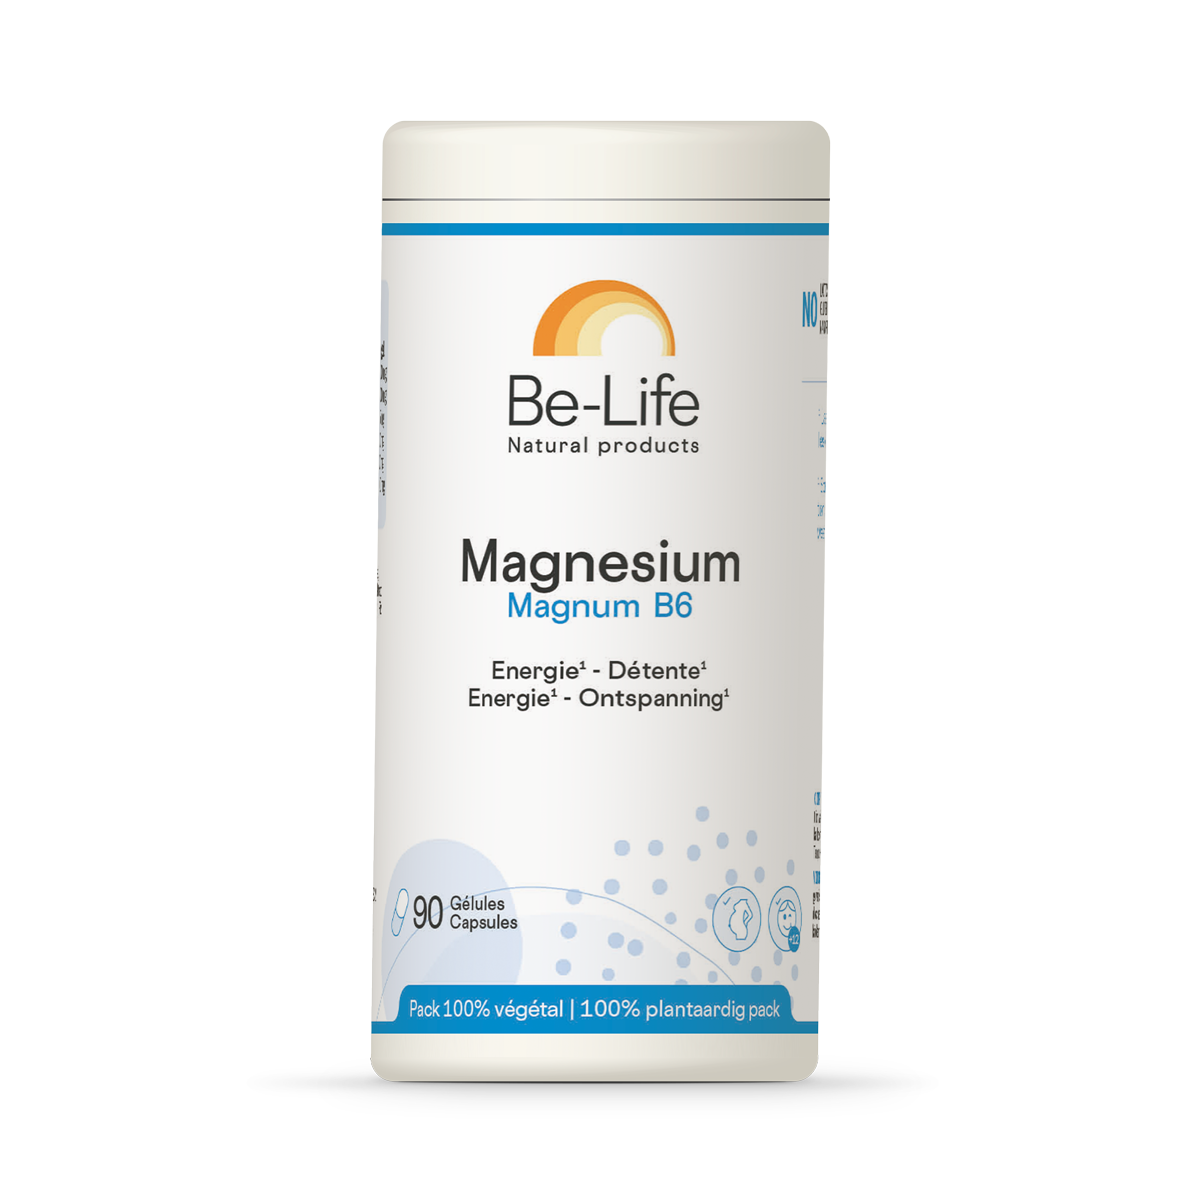 Magnesium Magnum B6